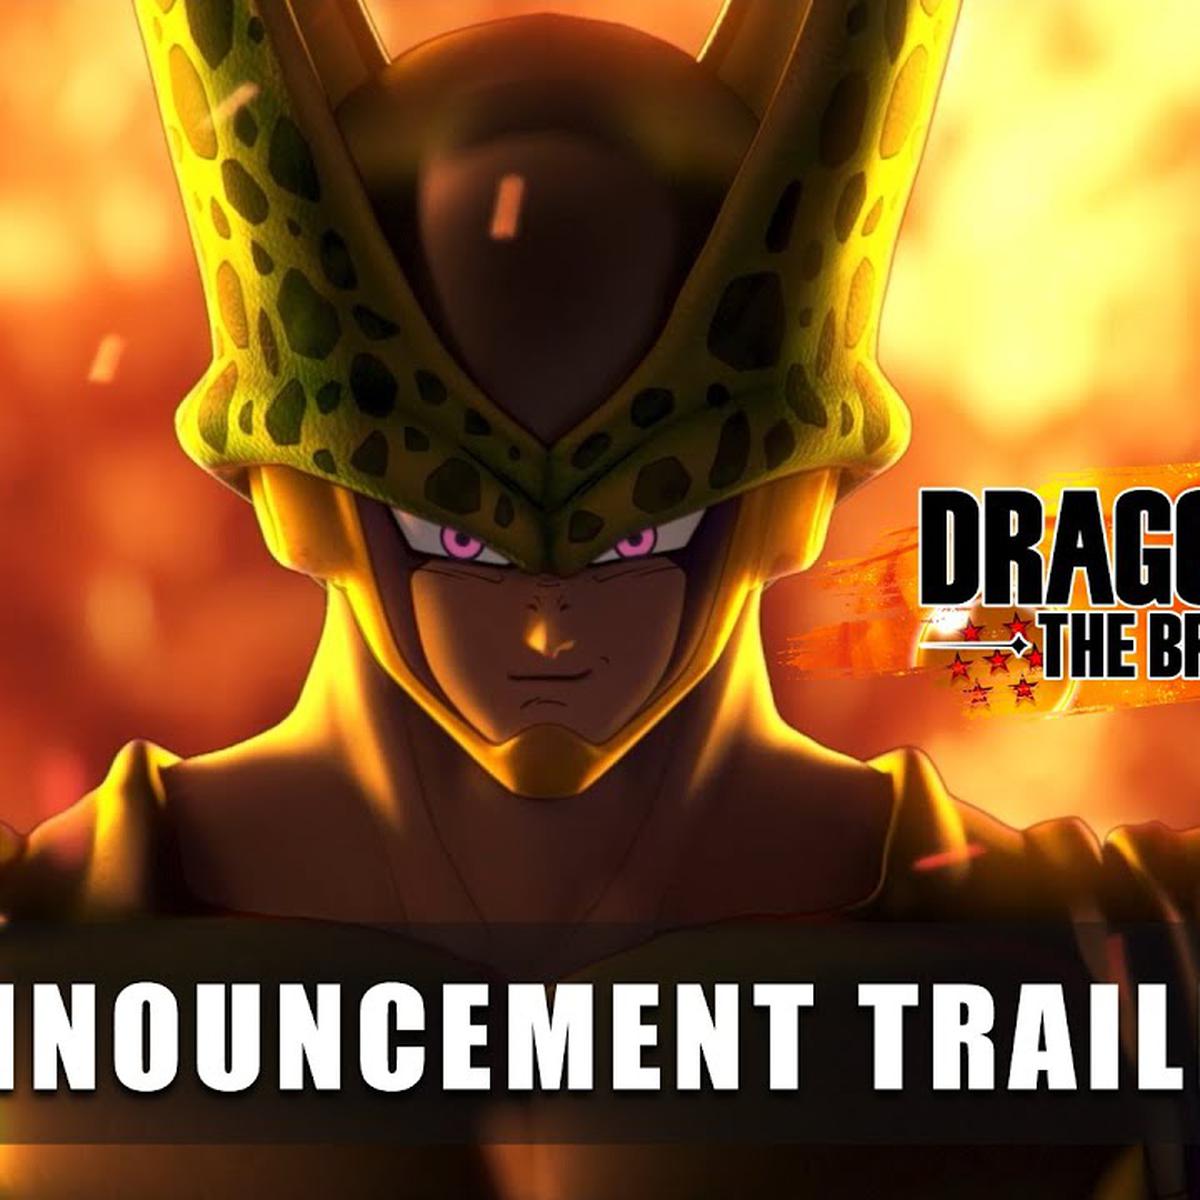 Dragon Ball: The Breakers revela Majin Boo e anuncia novo Beta aberto